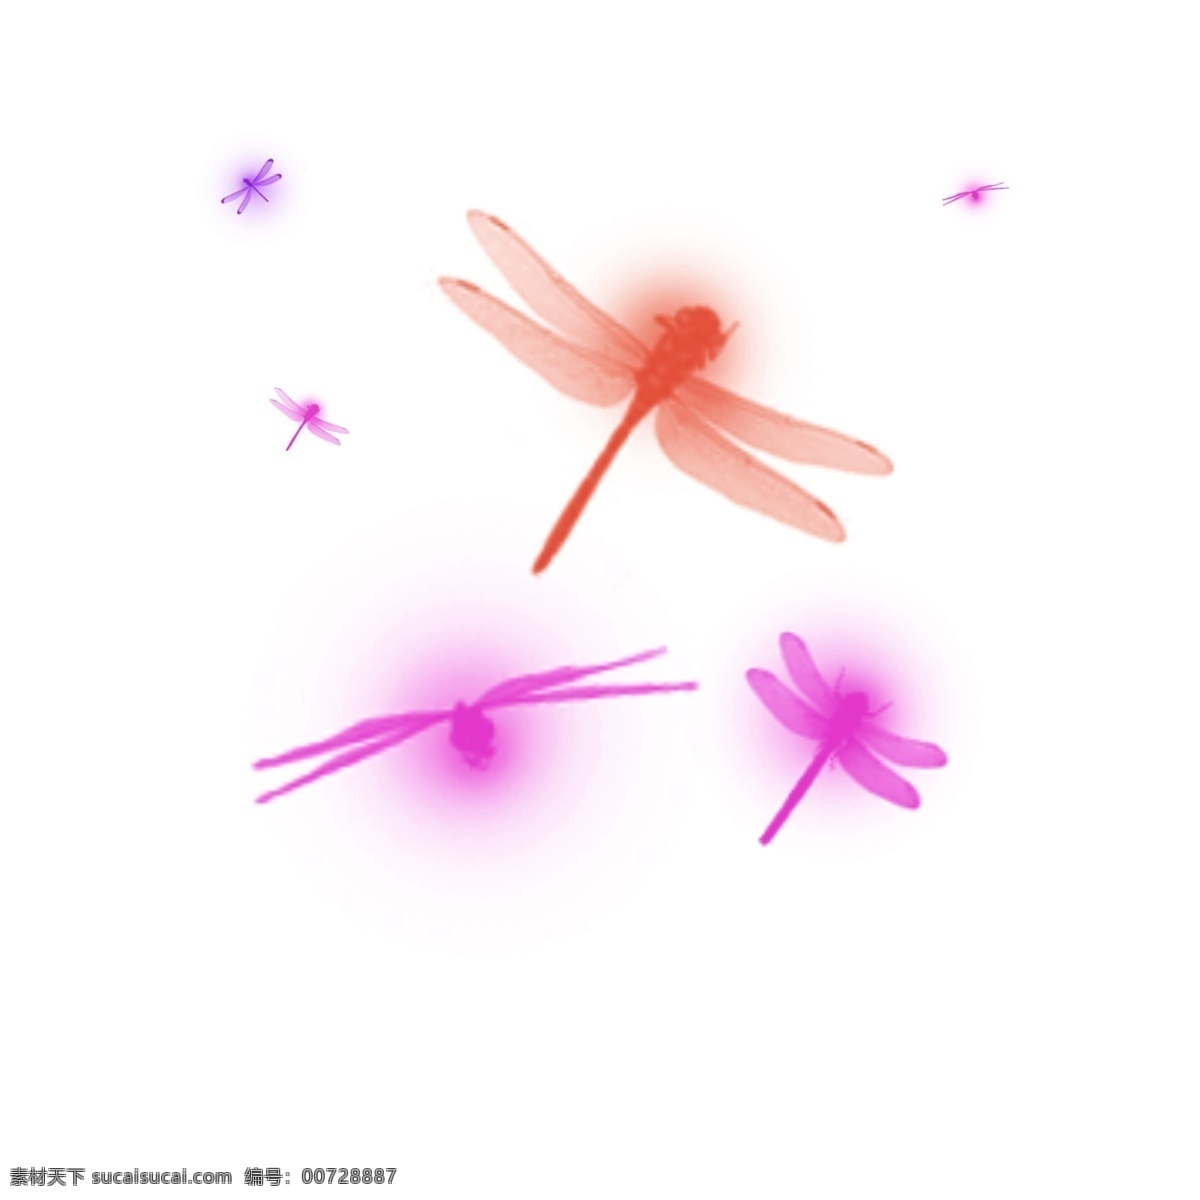 彩色 蜻蜓 背景特效 背景图案 装饰图案 psd分层图 背景设计 边框底纹设计 300分辨率 动物 特效 紫色 梦幻